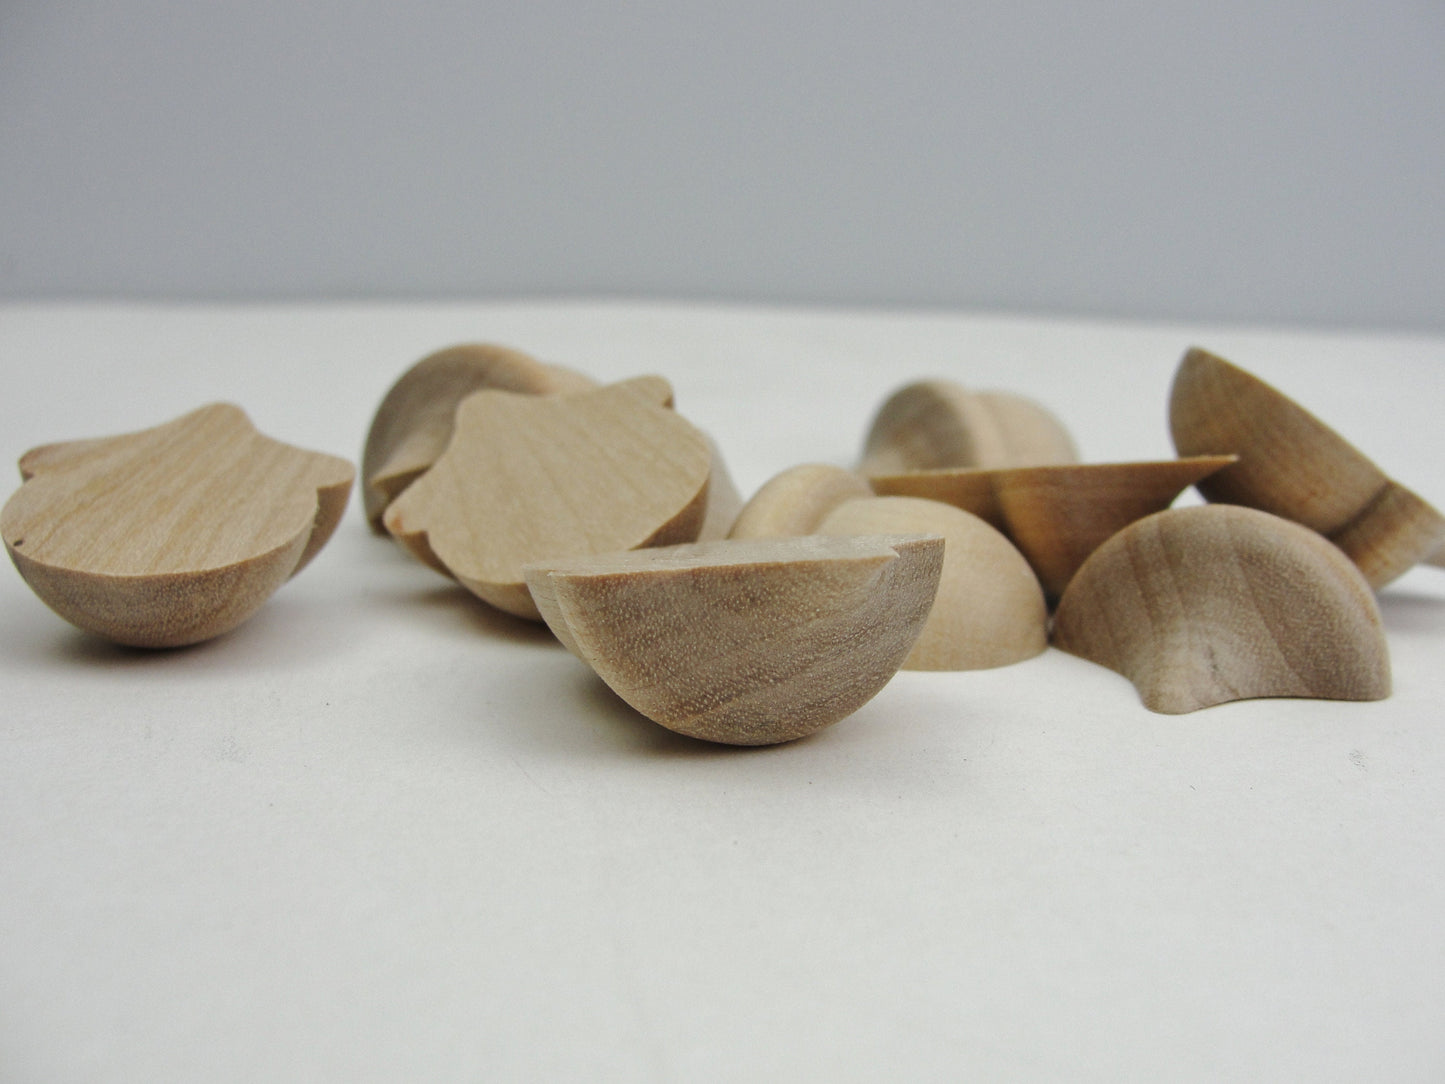 Split wooden acorns life size set of 10 Unfinished DIY